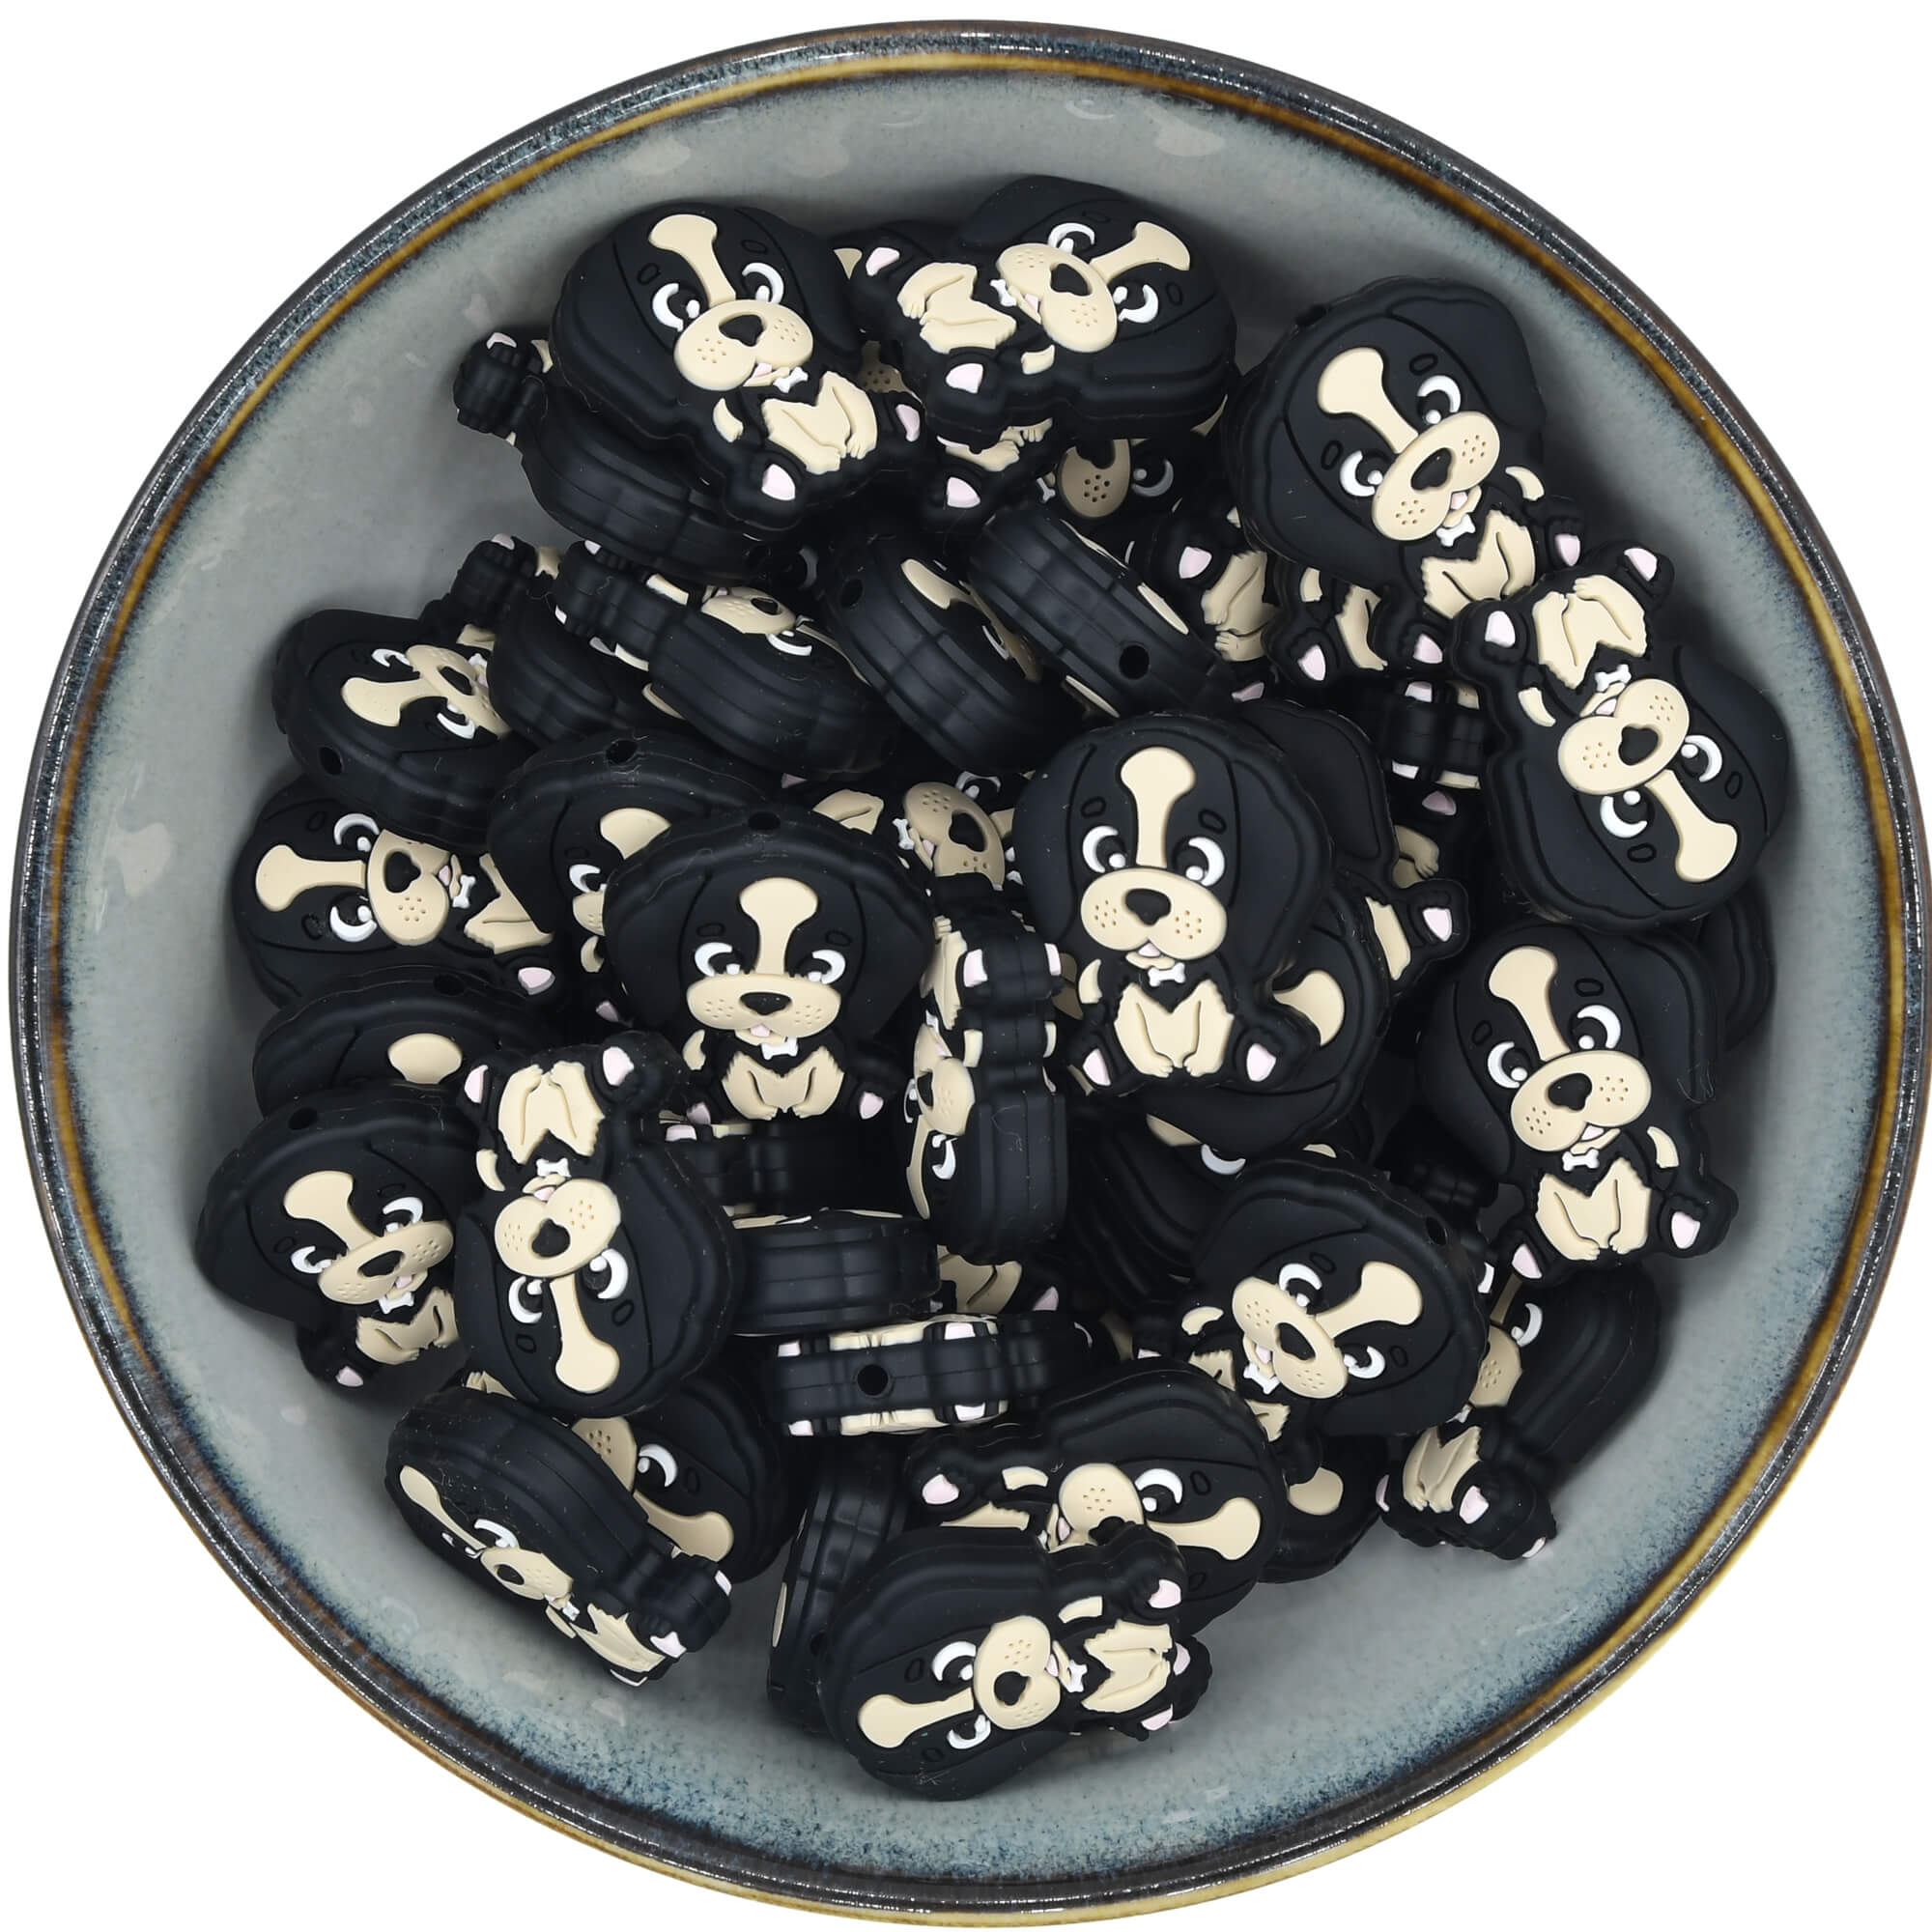 Siliconen figuurkraal in de vorm van een hondje dat lijkt op een cocker spaniel in de kleur zwart